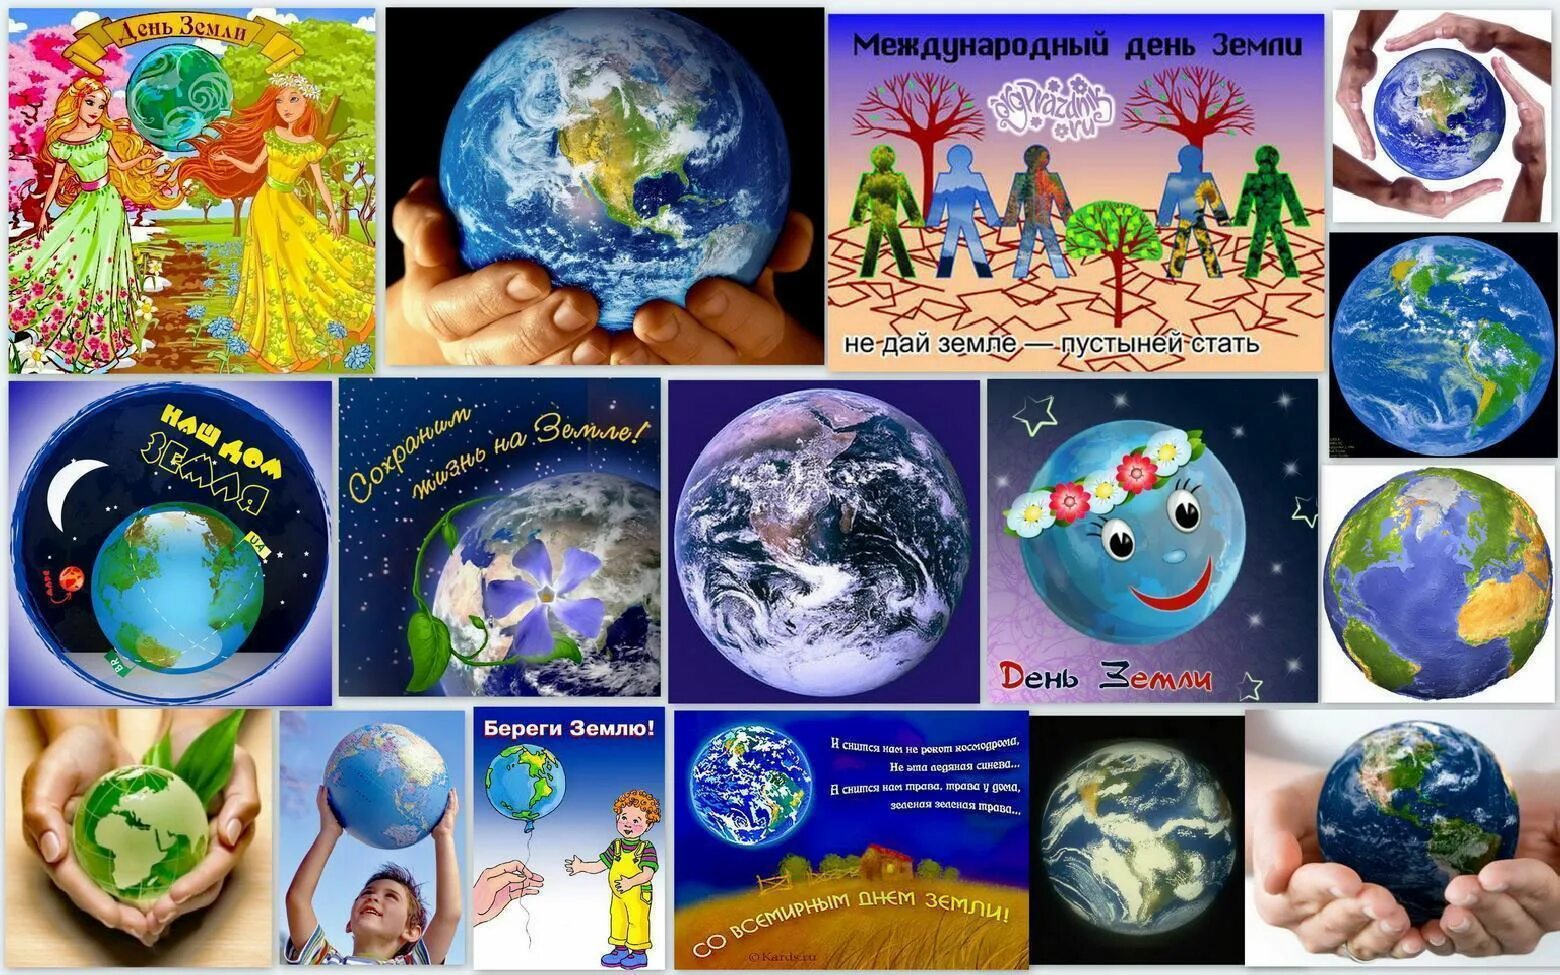 Земли 23 апреля. Всемирный день земли. 22 Апреля день земли. День земли плакат. День земли картинки.